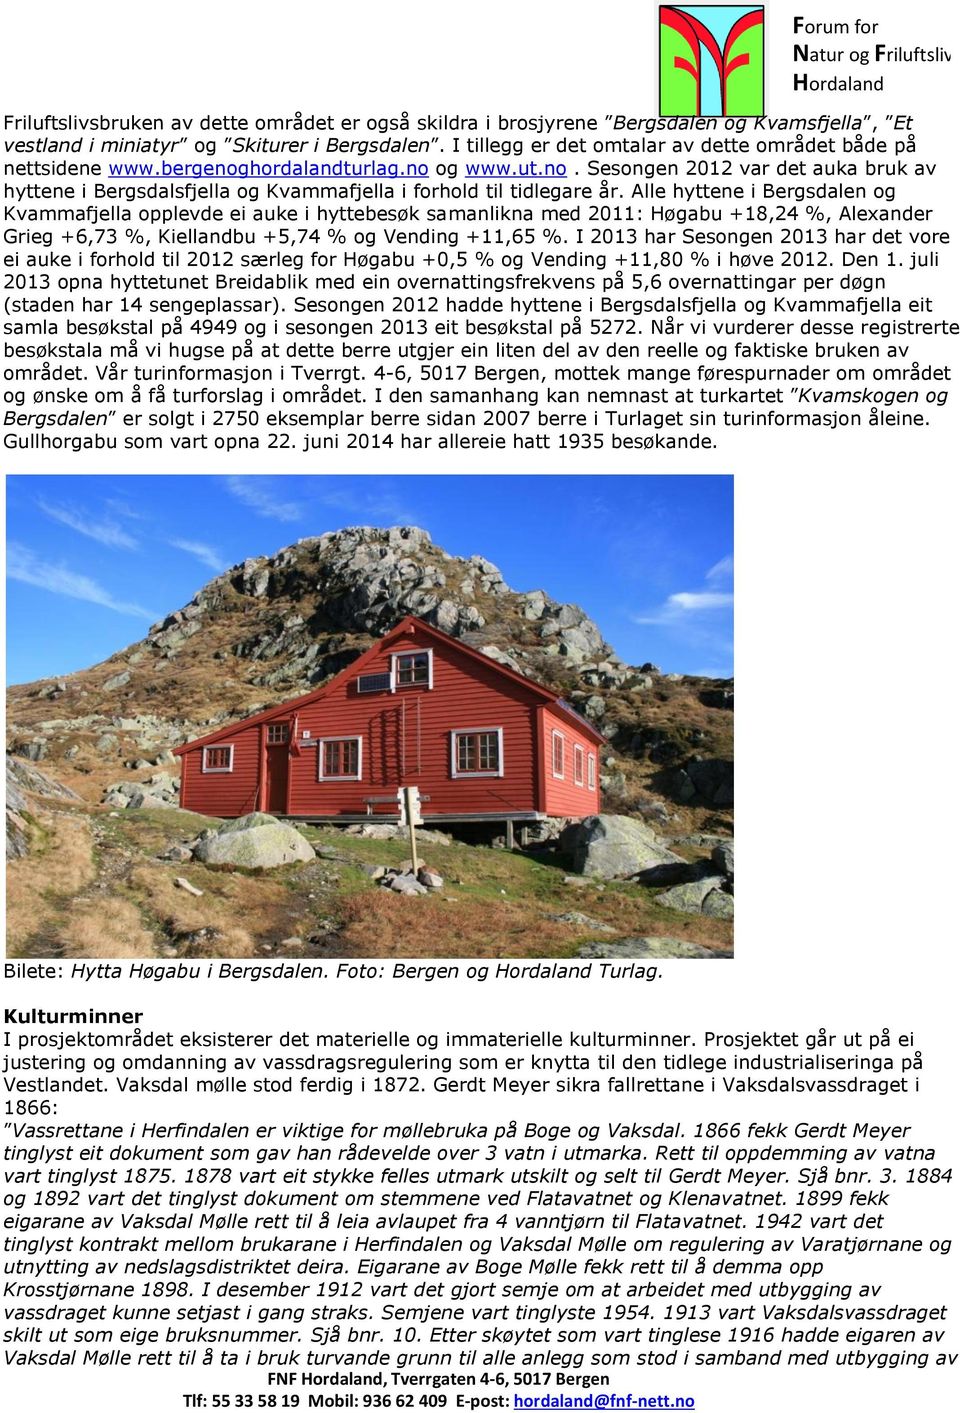 Alle hyttene i Bergsdalen og Kvammafjella opplevde ei auke i hyttebesøk samanlikna med 2011: Høgabu +18,24 %, Alexander Grieg +6,73 %, Kiellandbu +5,74 % og Vending +11,65 %.